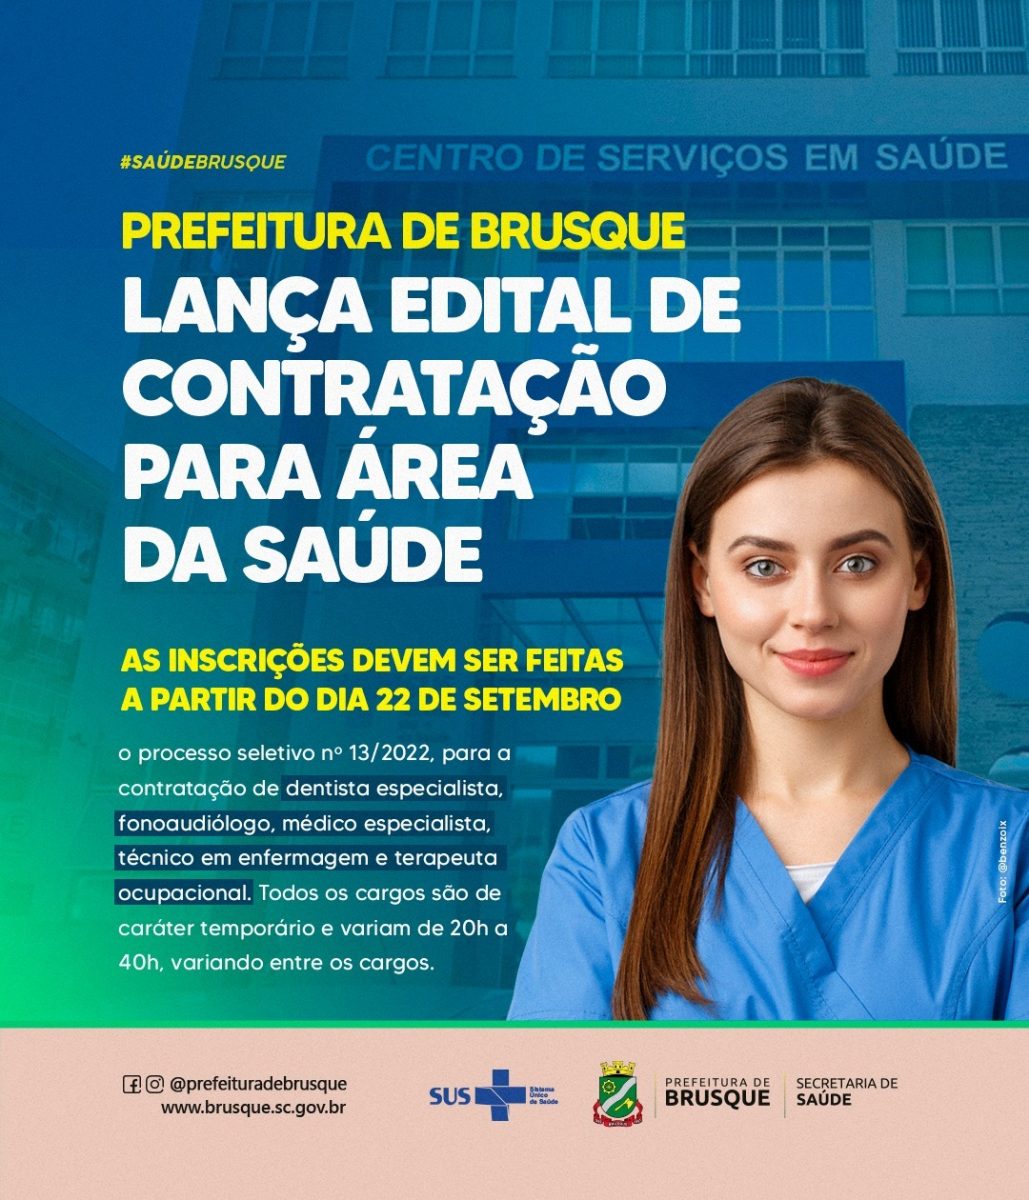 Prefeitura de Brusque lança edital de contratação para área da saúde